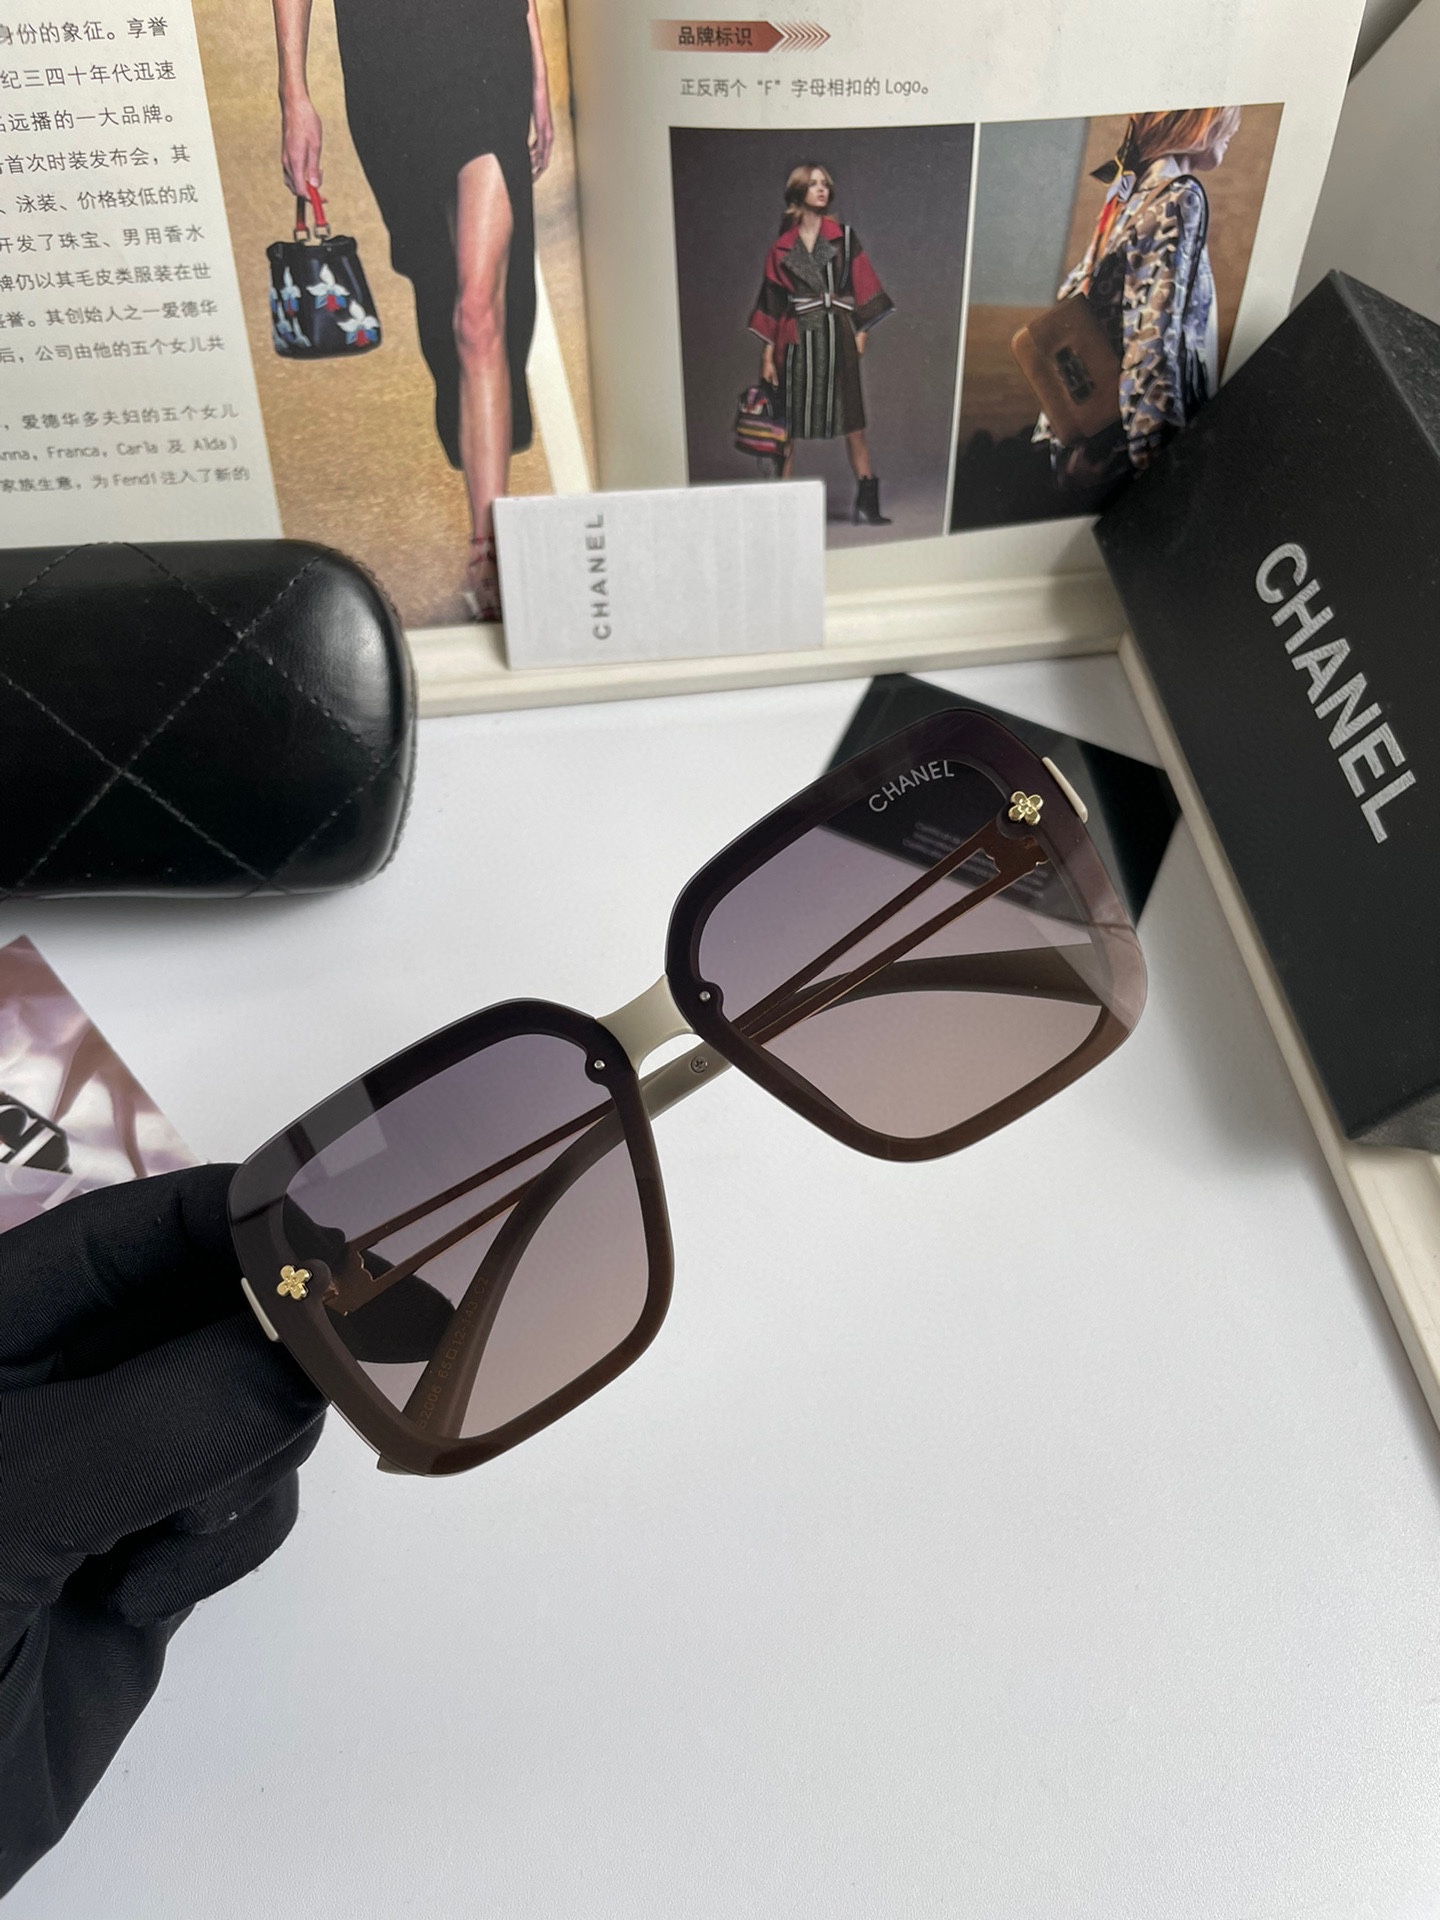 新款CHANEL香奈儿原单品质女士偏光太阳镜TR90材质进口宝丽来高清偏光镜片官网同步发售时尚大气出行必